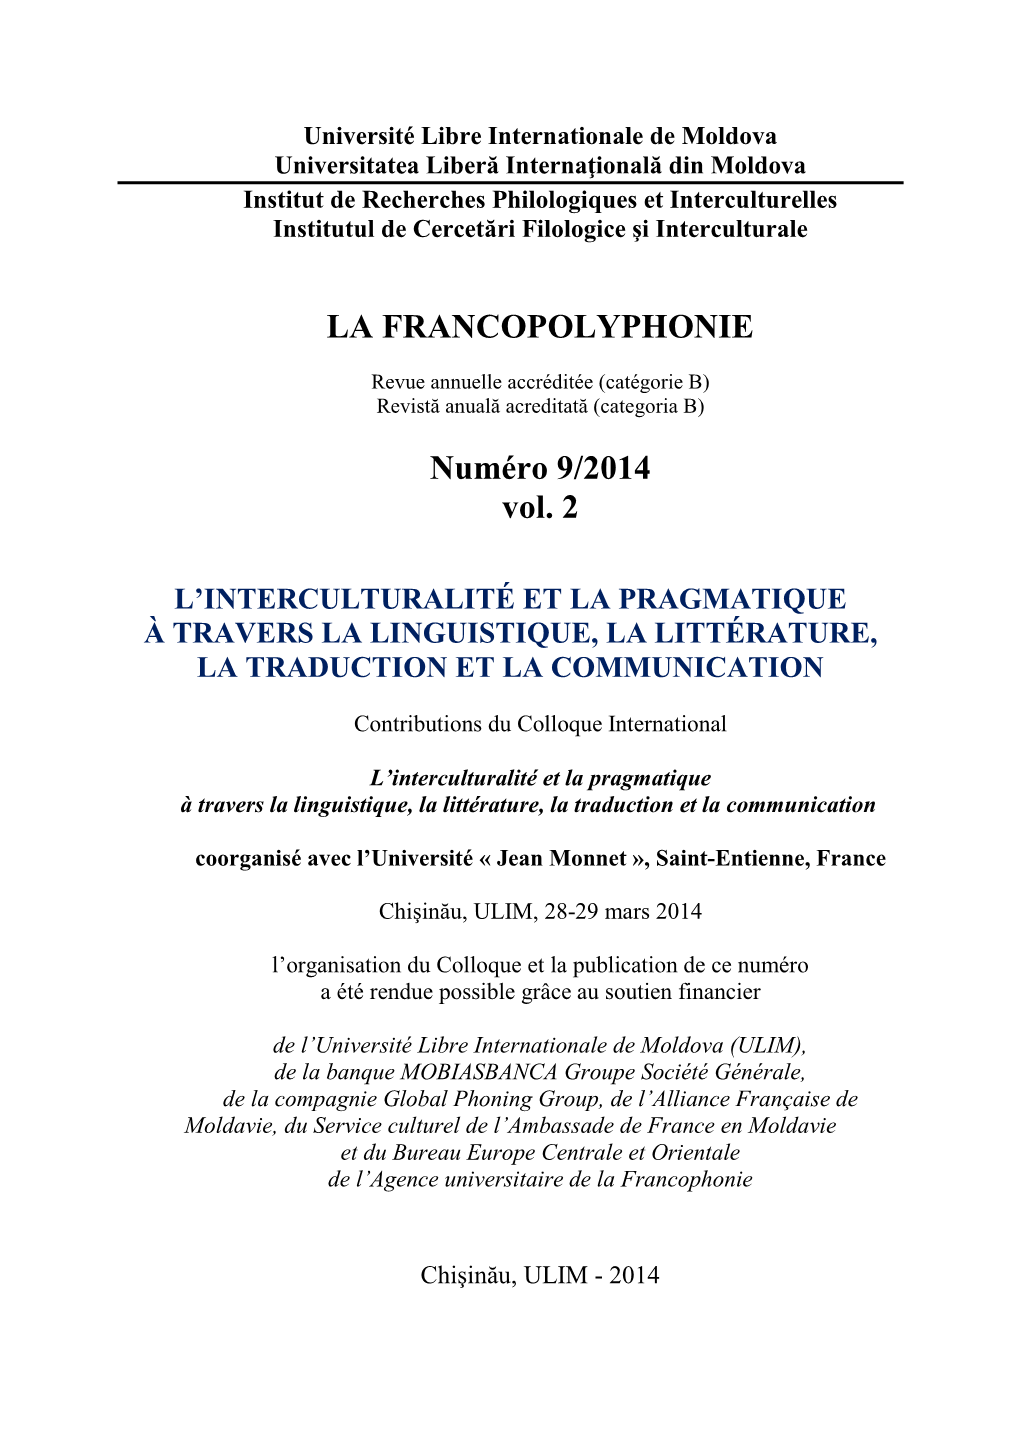 LA FRANCOPOLYPHONIE Numéro 9/2014 Vol. 2